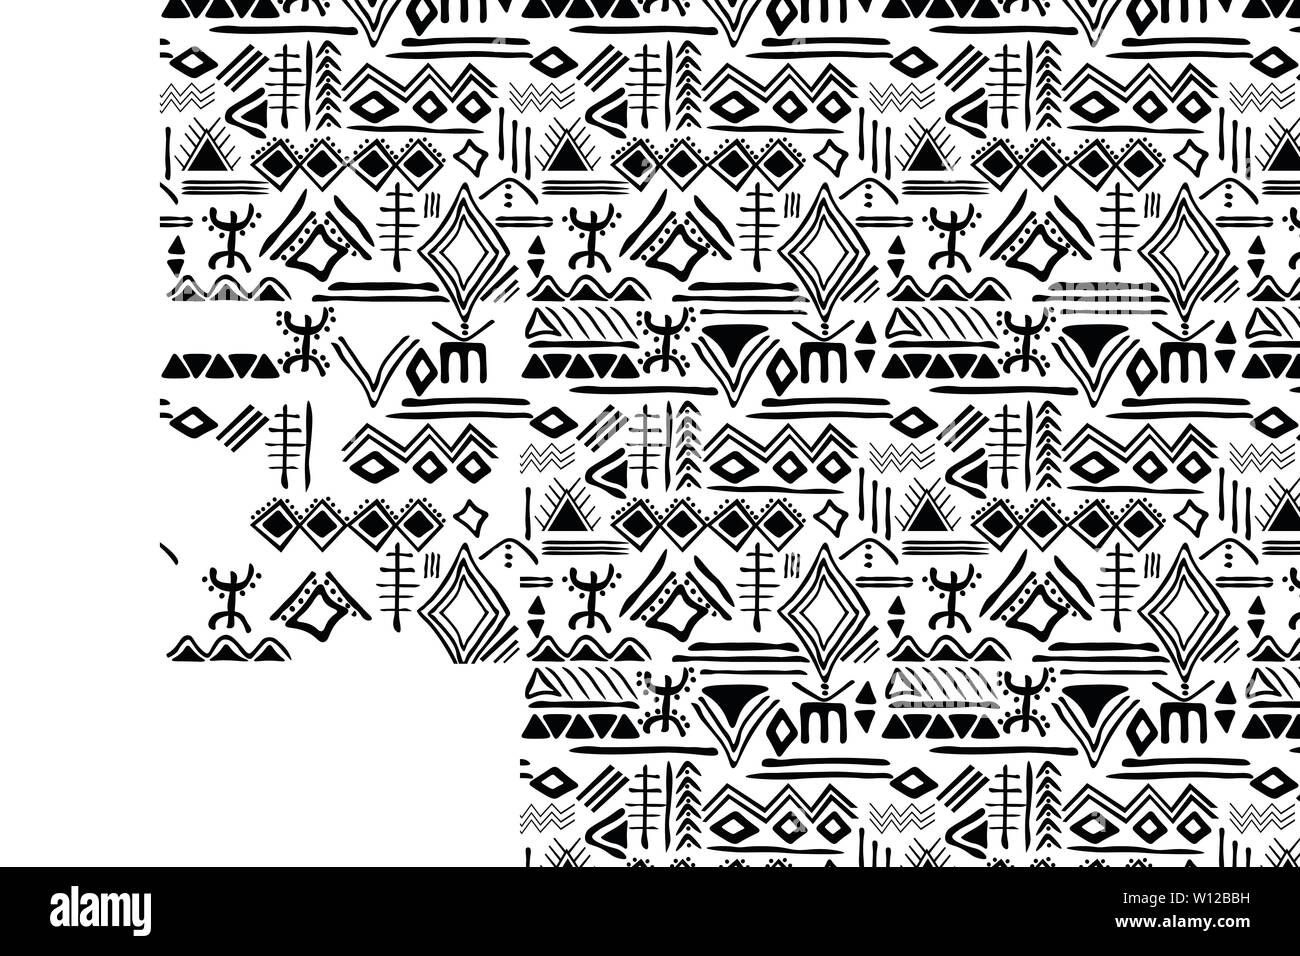 Tribal seamless pattern con arcaica ornamento geometrico. Primitivo stile etnico con disegnato a mano i confini senza fine. Felice colorata tavolozza dei colori Illustrazione Vettoriale